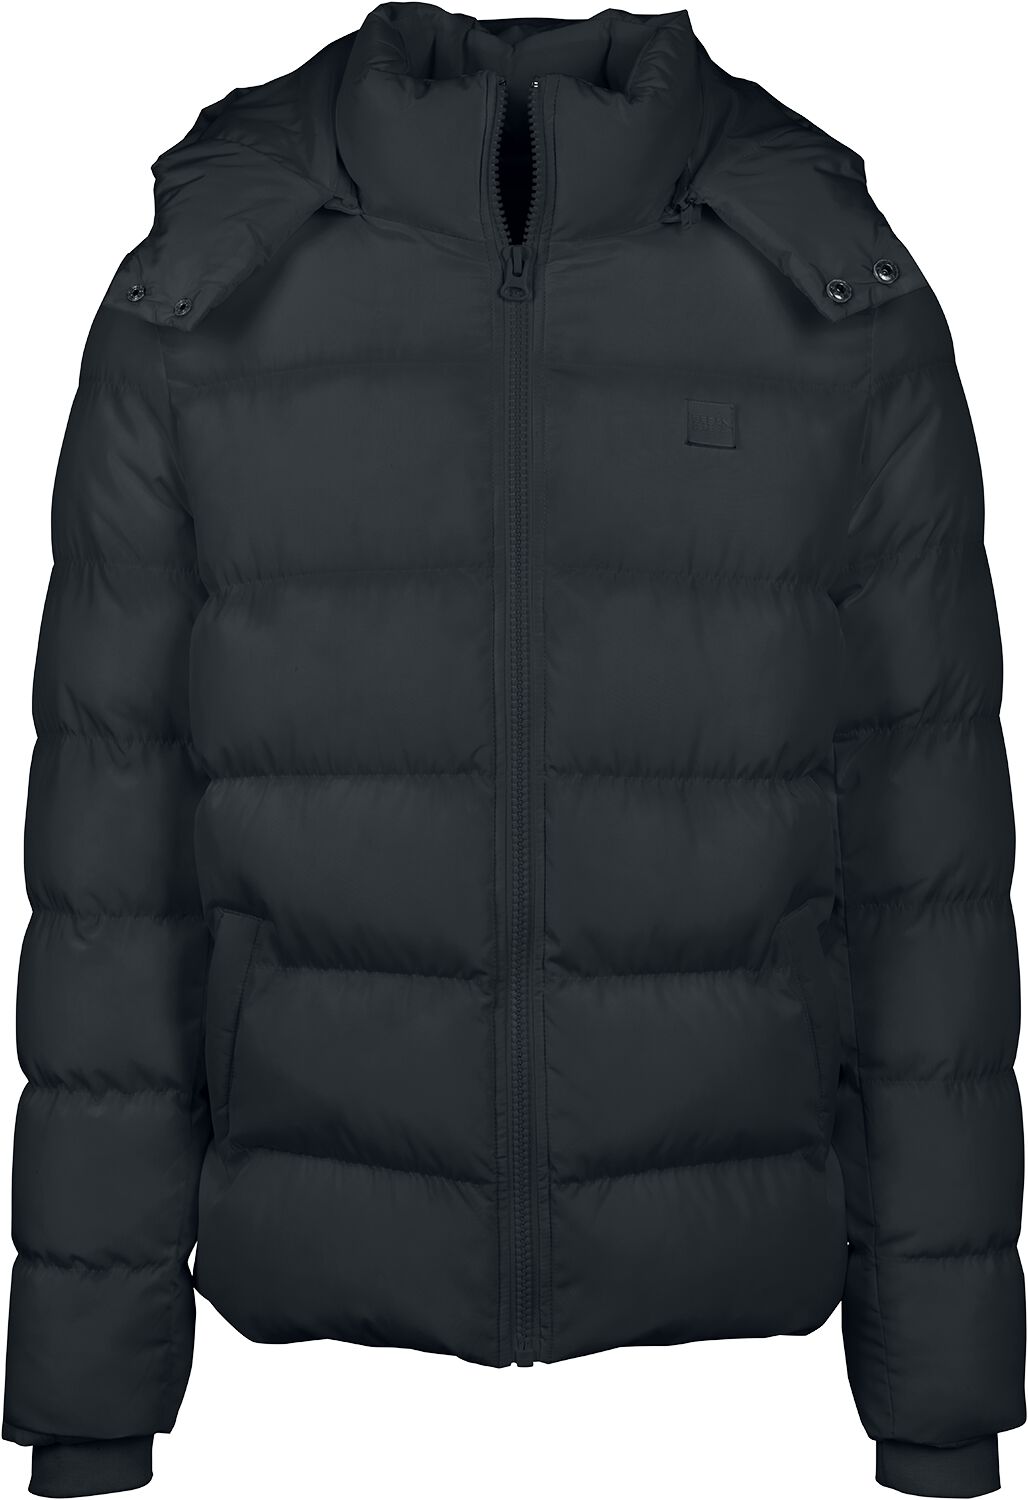 Urban Classics Übergangsjacke - Hooded Puffer Jacket - L bis 5XL - für Männer - Größe 3XL - schwarz